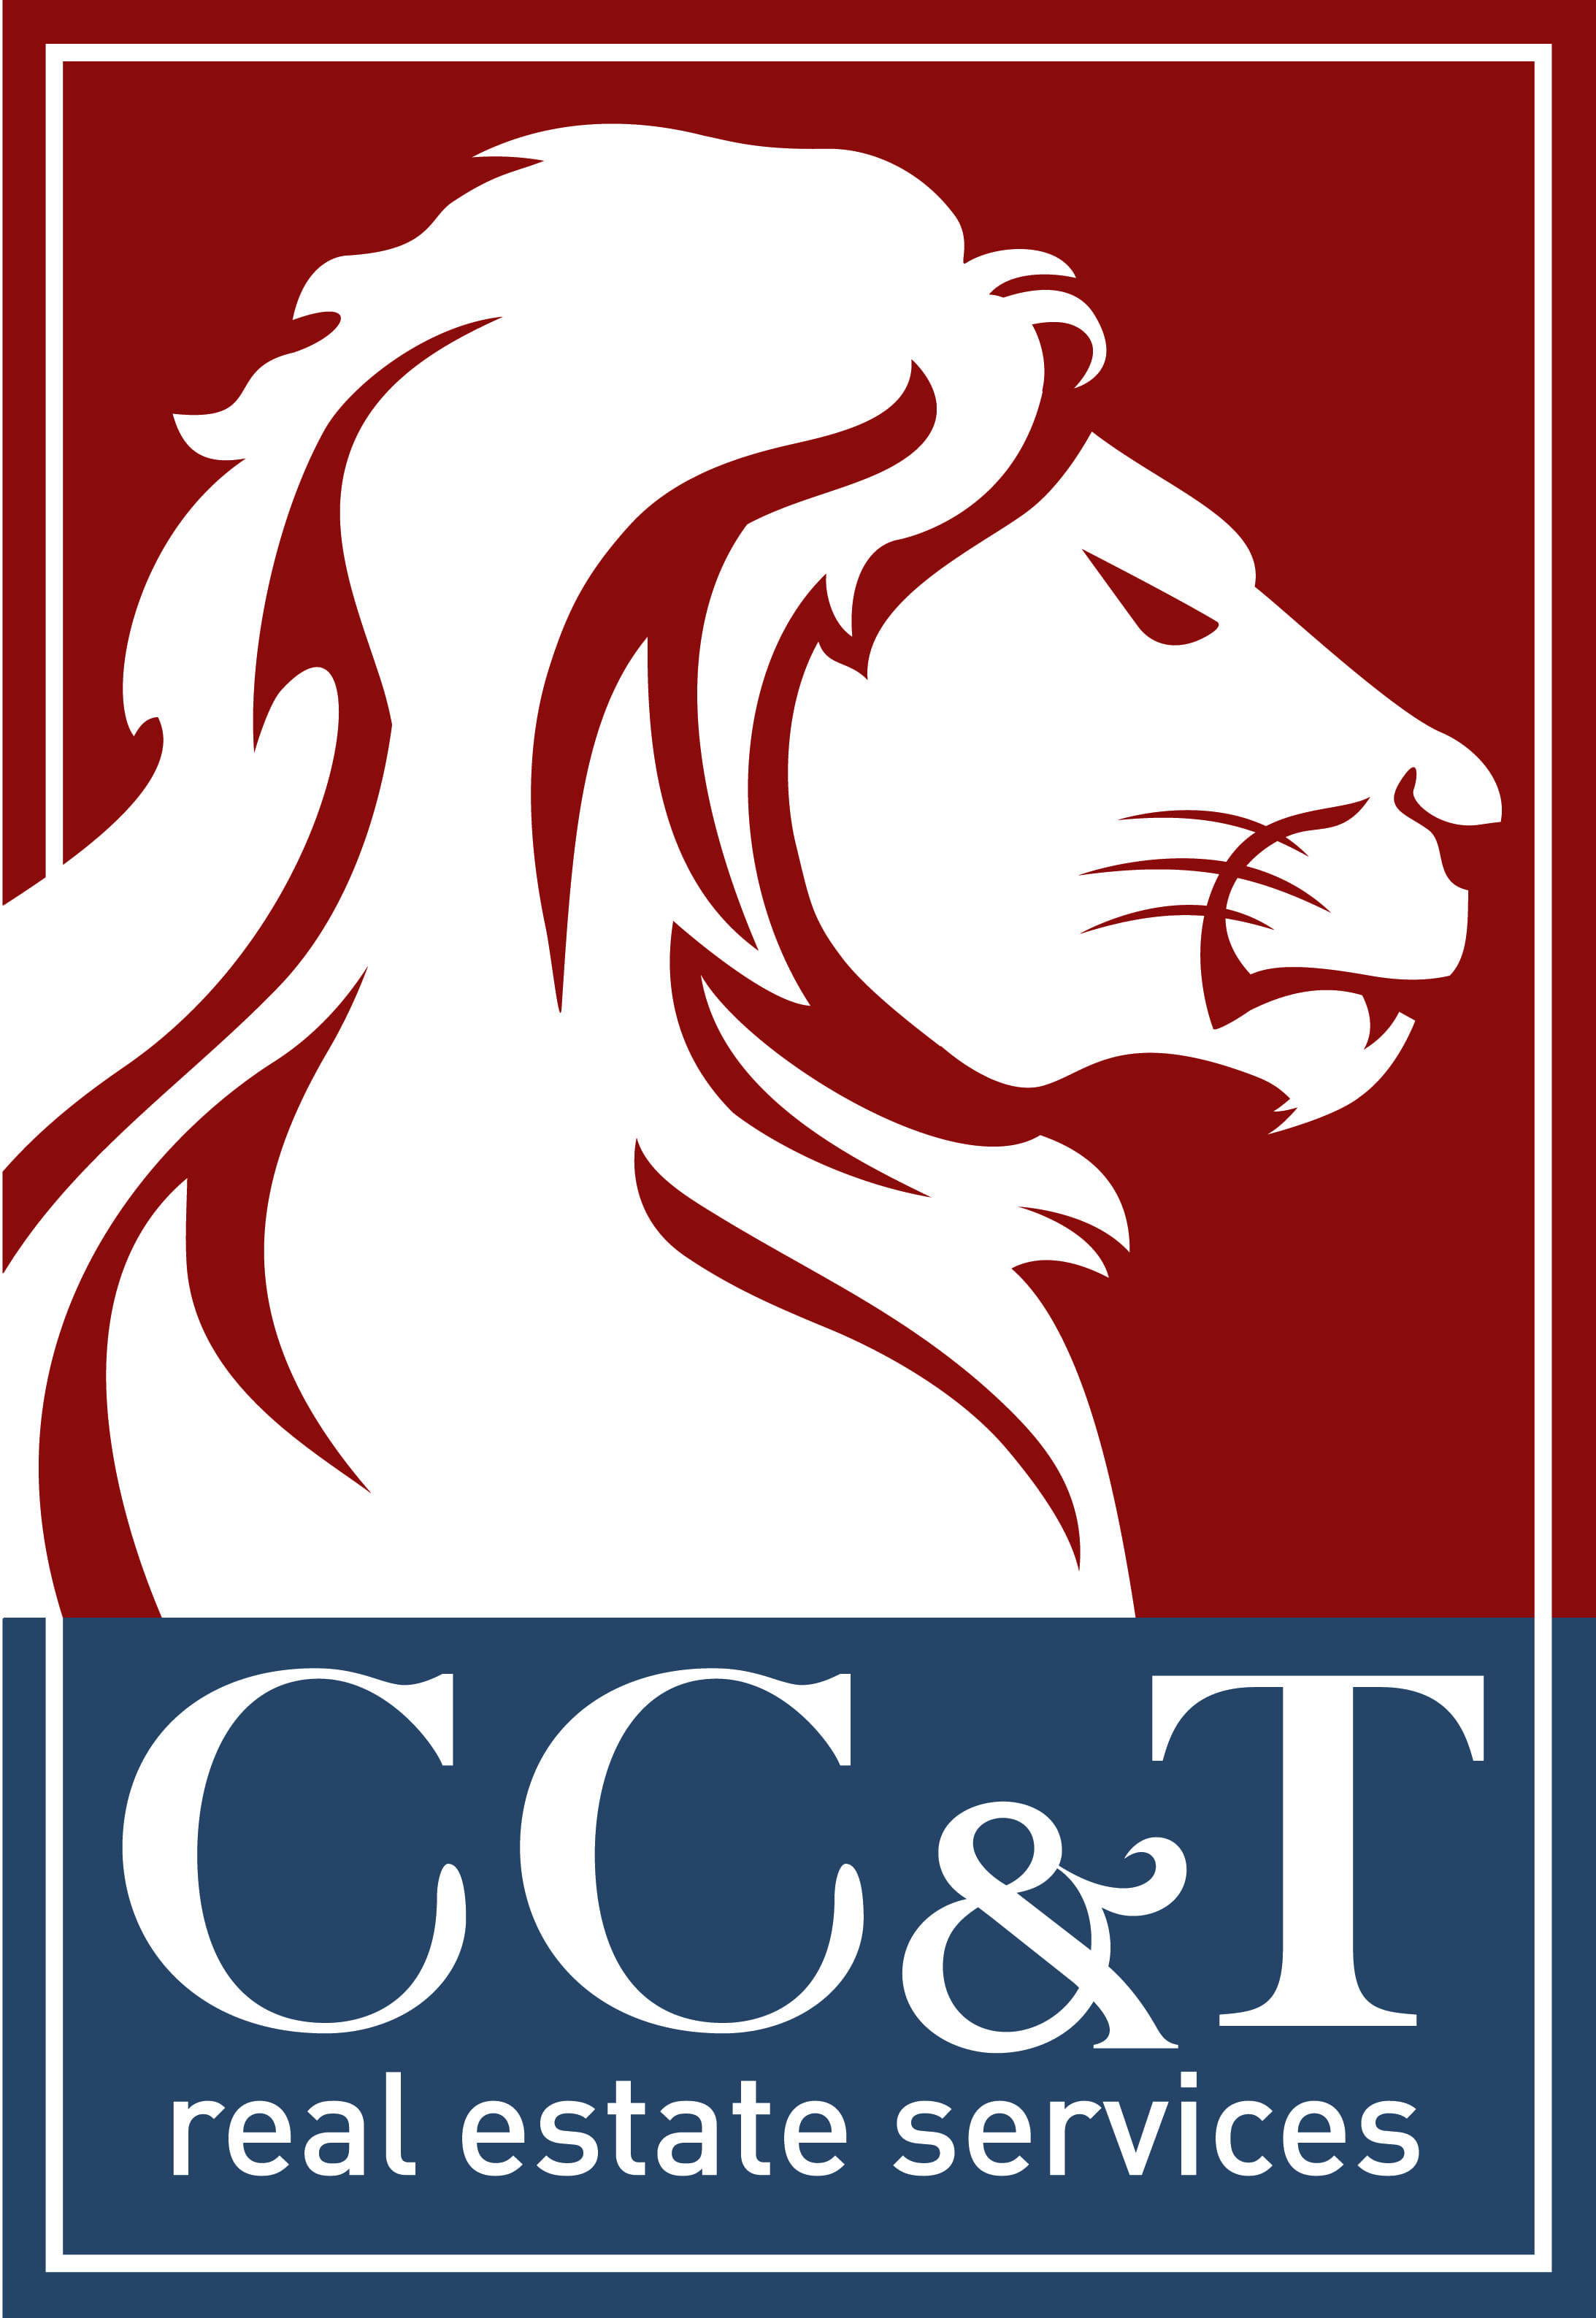 CC&T vector logo copy